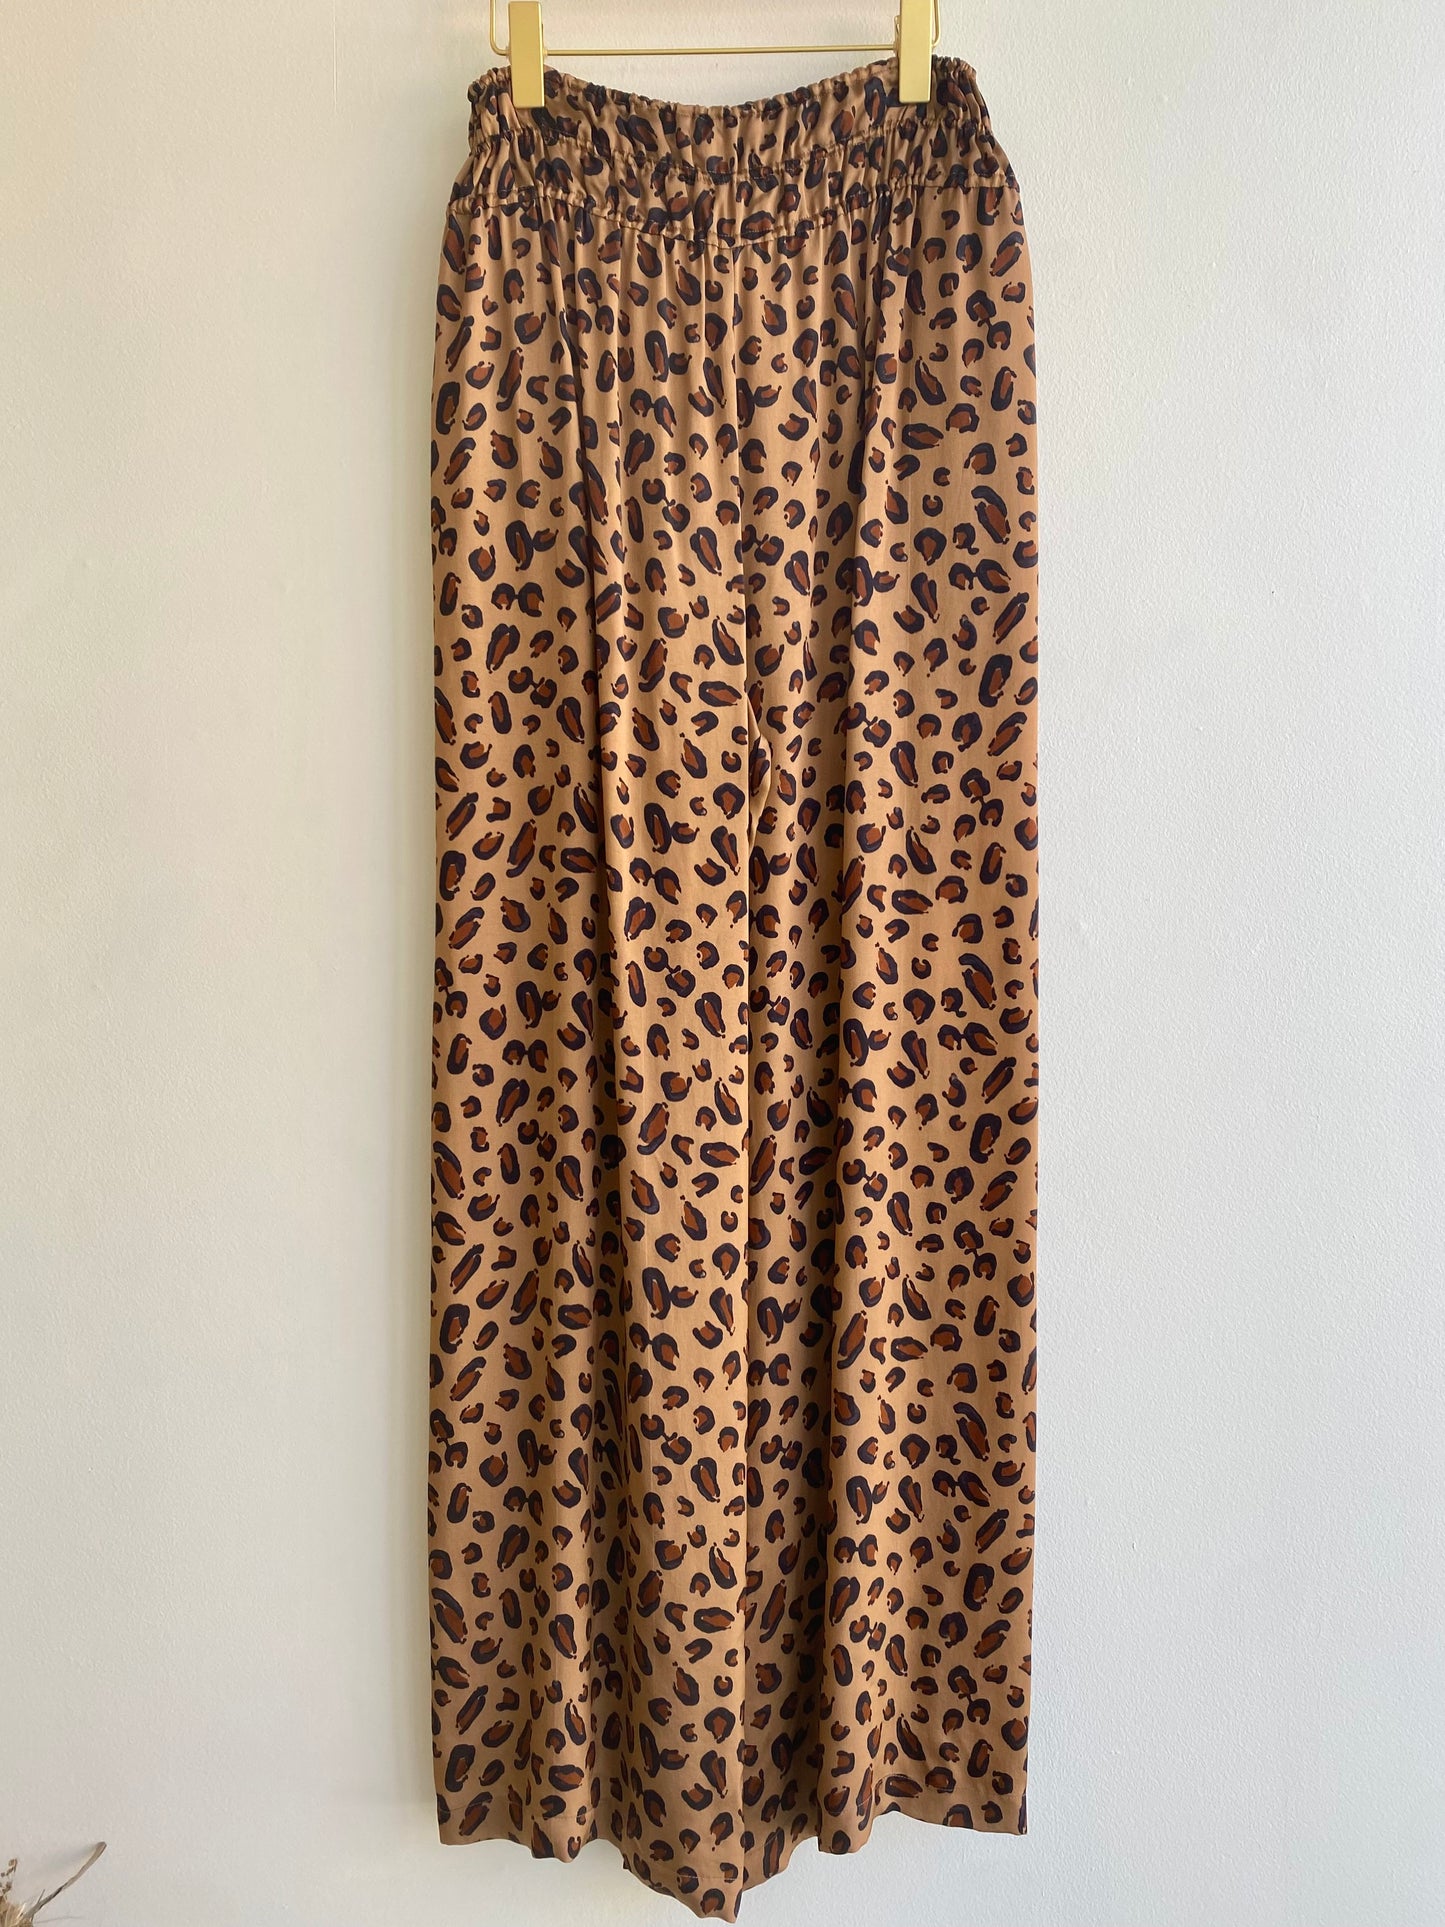 Cheetah Pant and Blouse Vintage Set